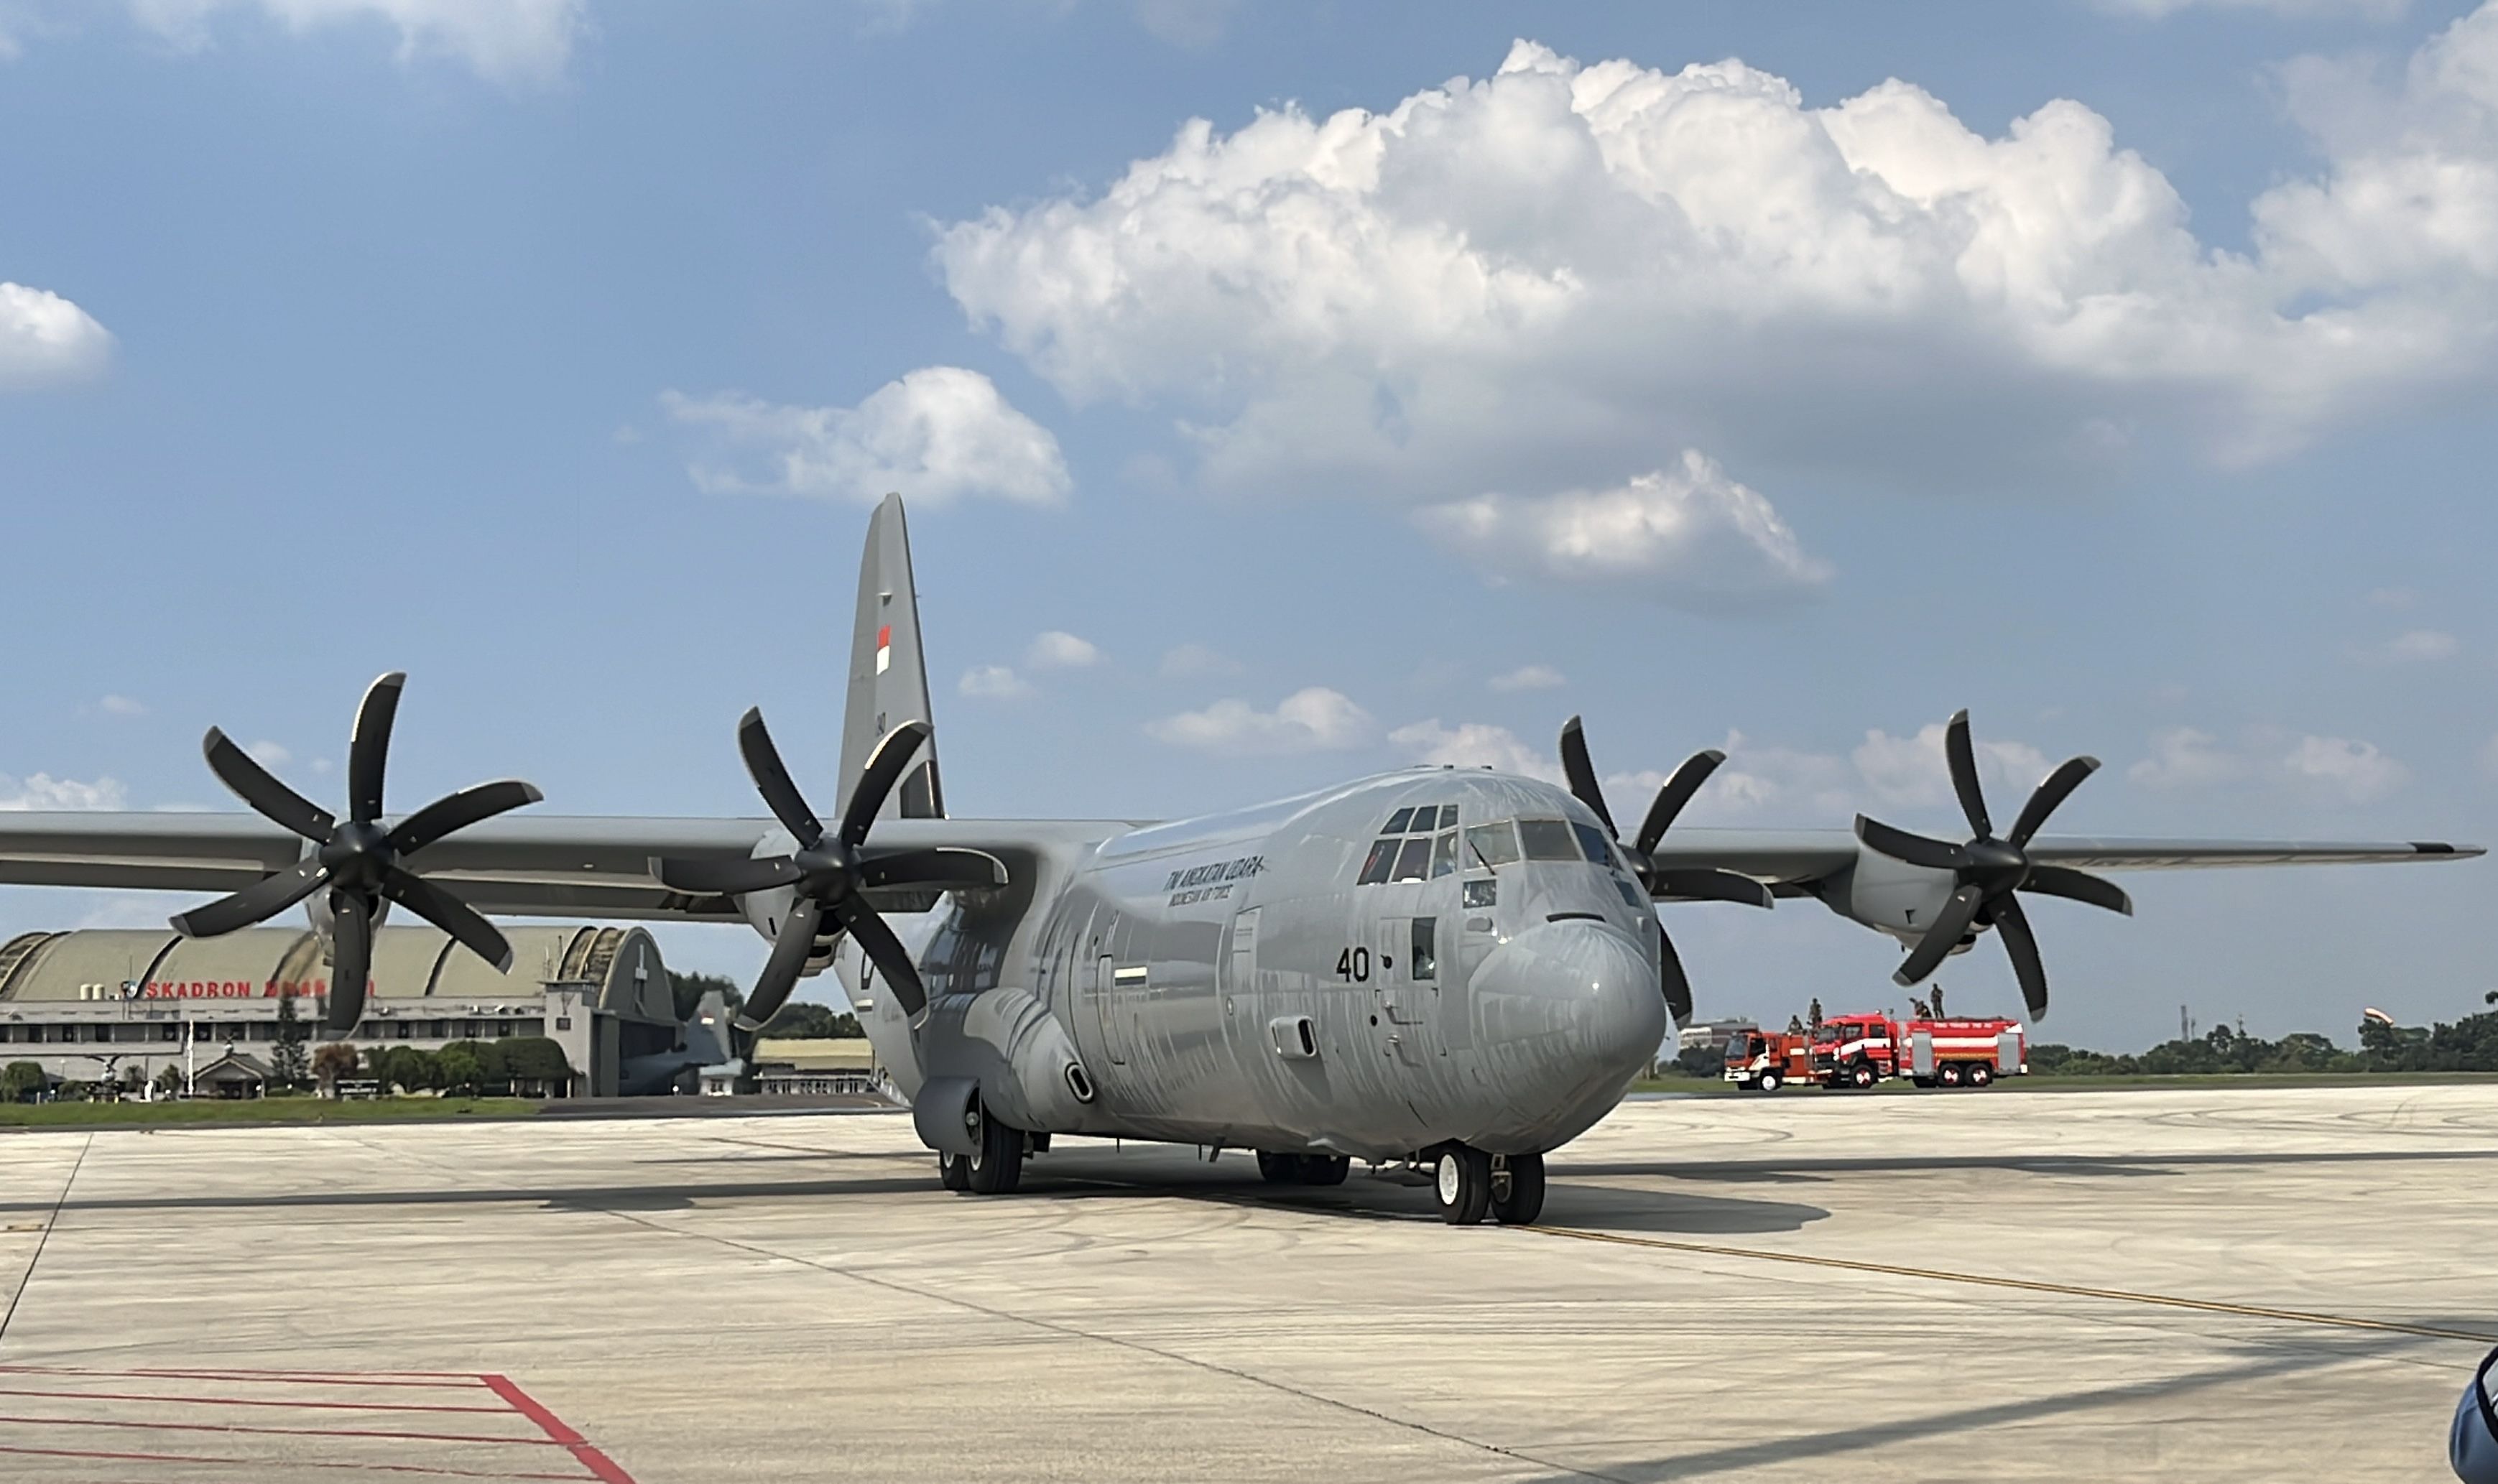 Tiba di Tanah Air, Hercules C-130J Kedua TNI Bakal Diserahkan Prabowo ke KSAU 